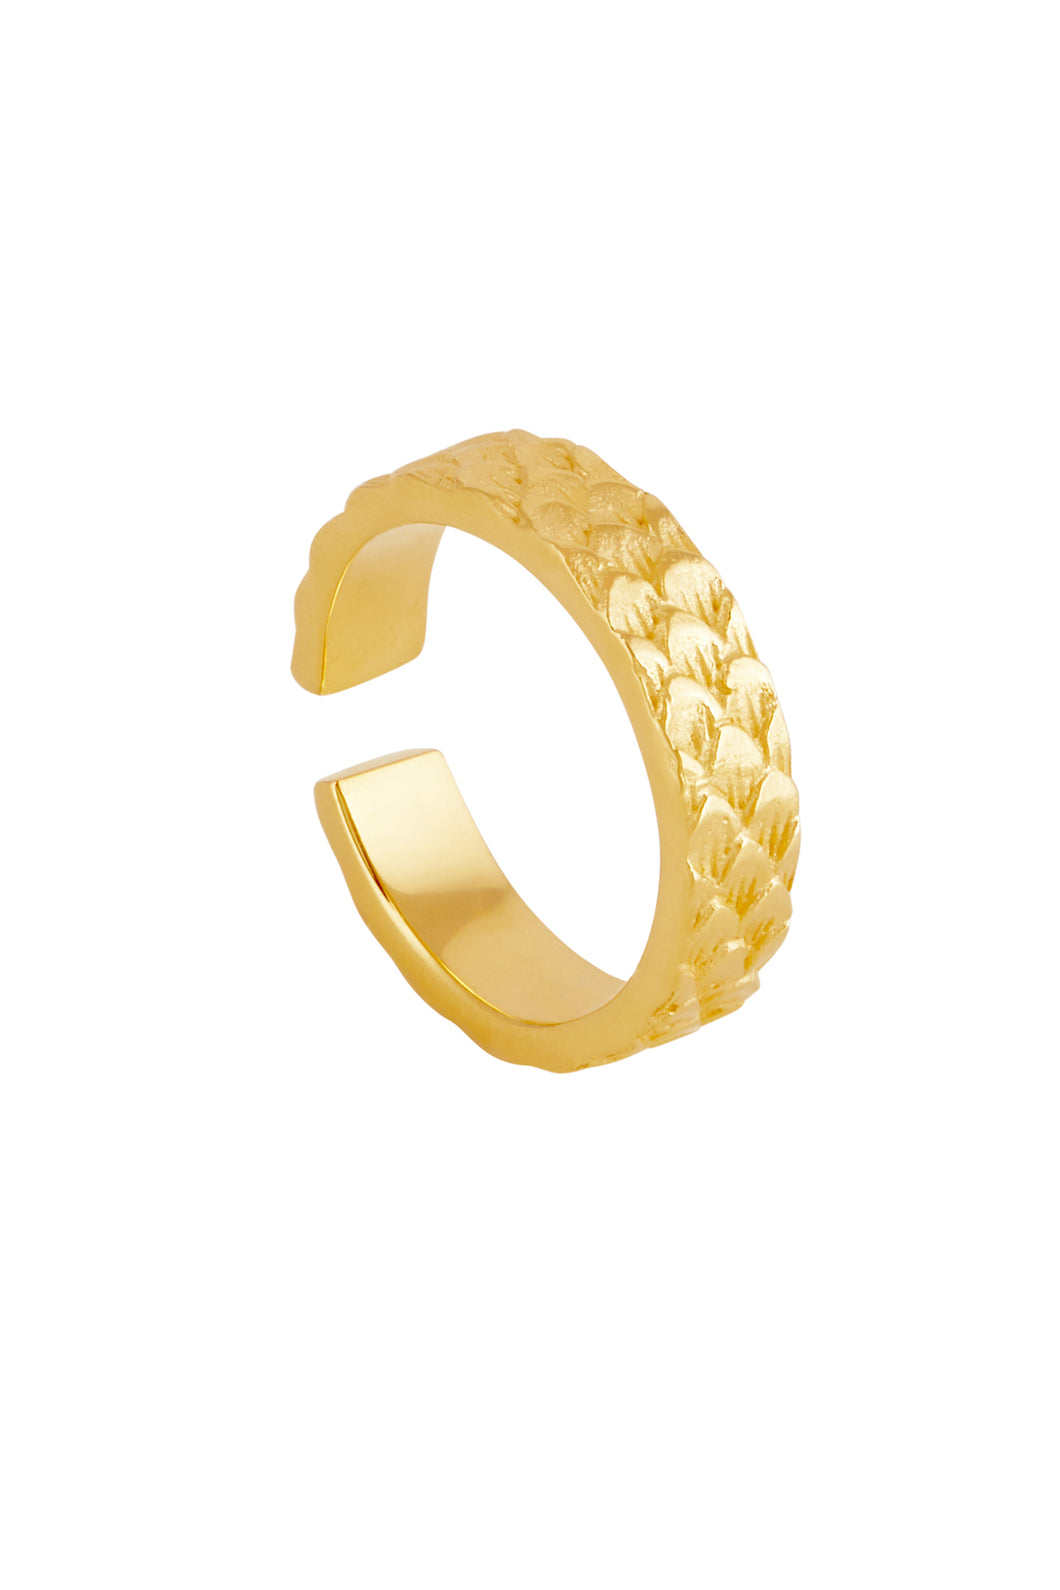 Koi Ring small Gold